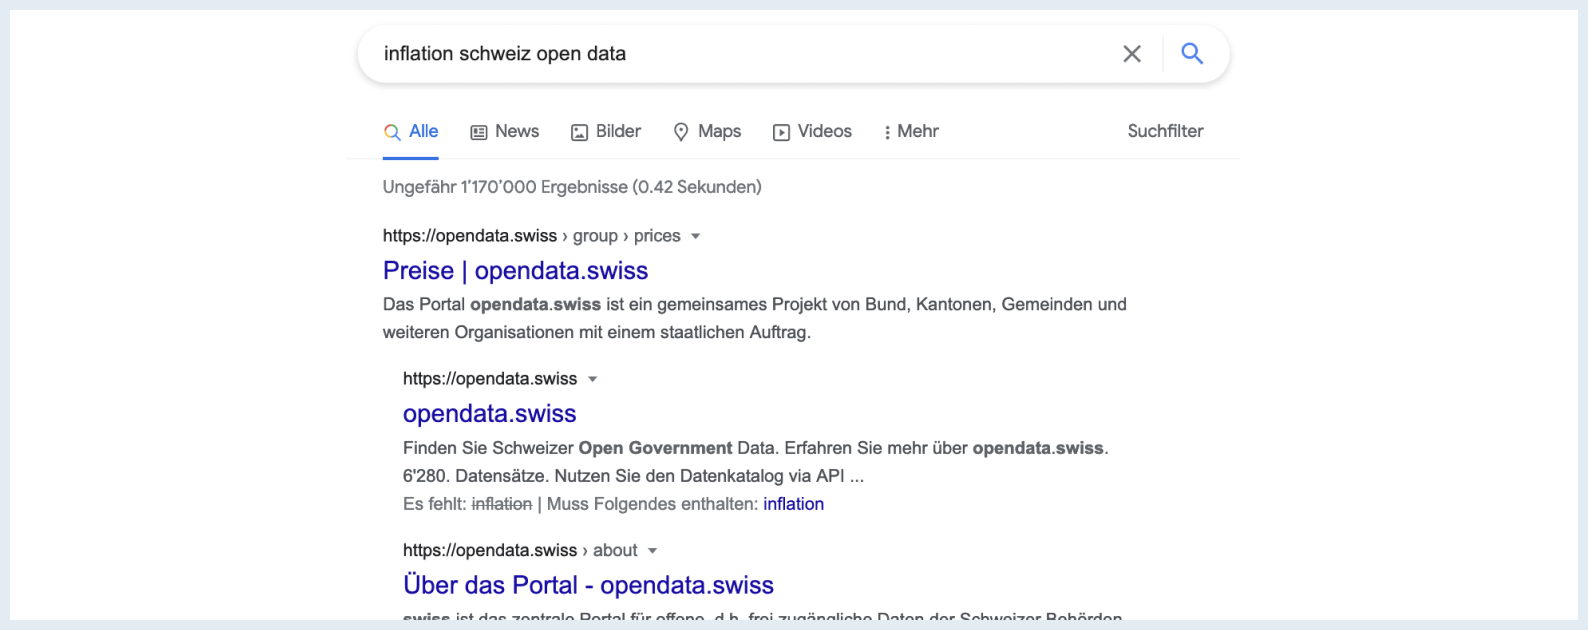 Google findet Inhalte von opendata.swiss in der Regel nur, wenn explizit mit "open data" gesucht wird.